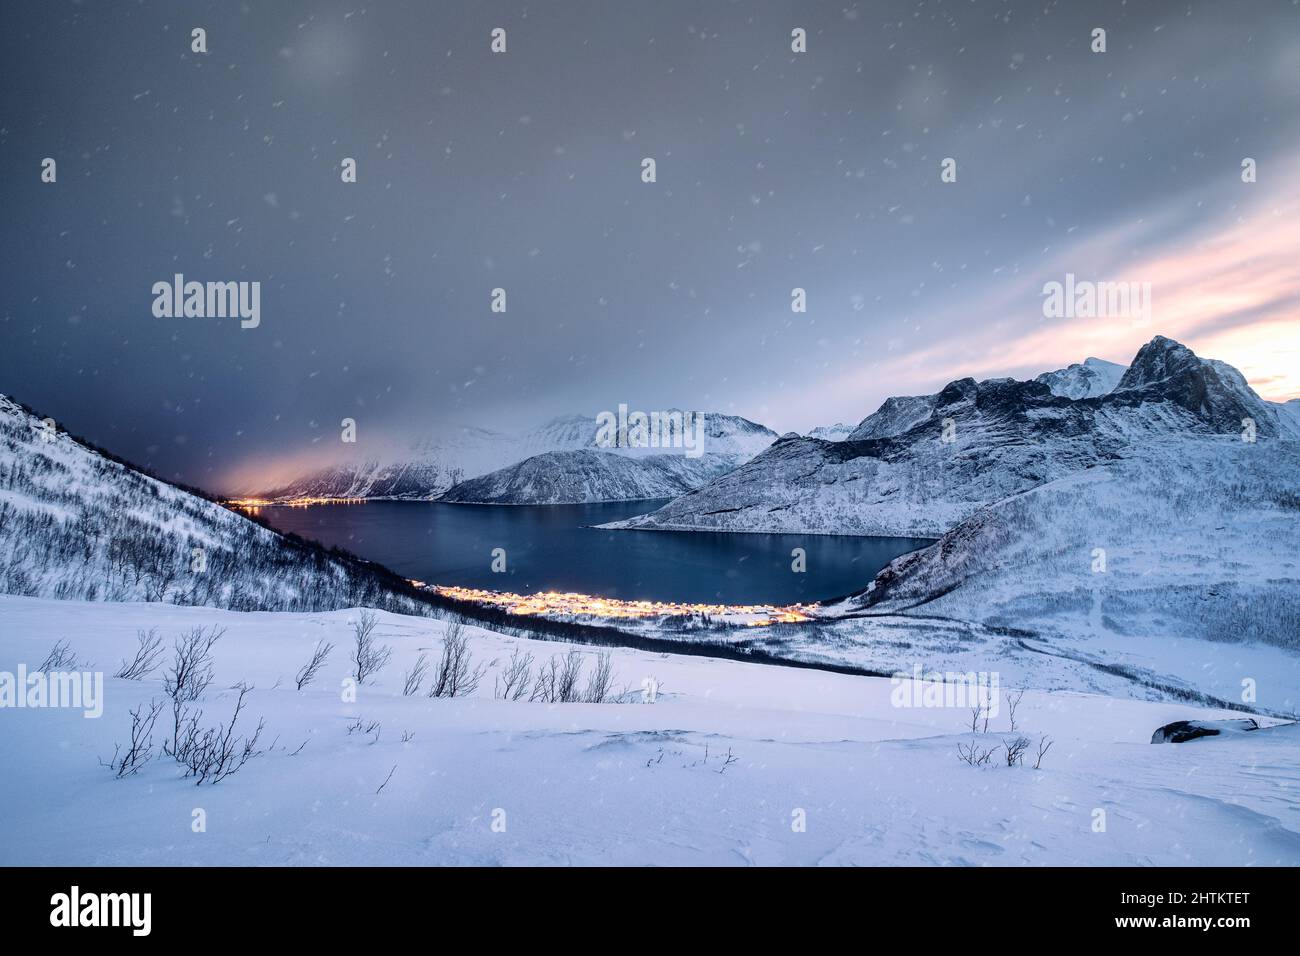 Paysage de chaîne de montagne enneigée avec ville illuminée sur la côte dans le blizzard au mont Segla, île de Senja, Norvège Banque D'Images